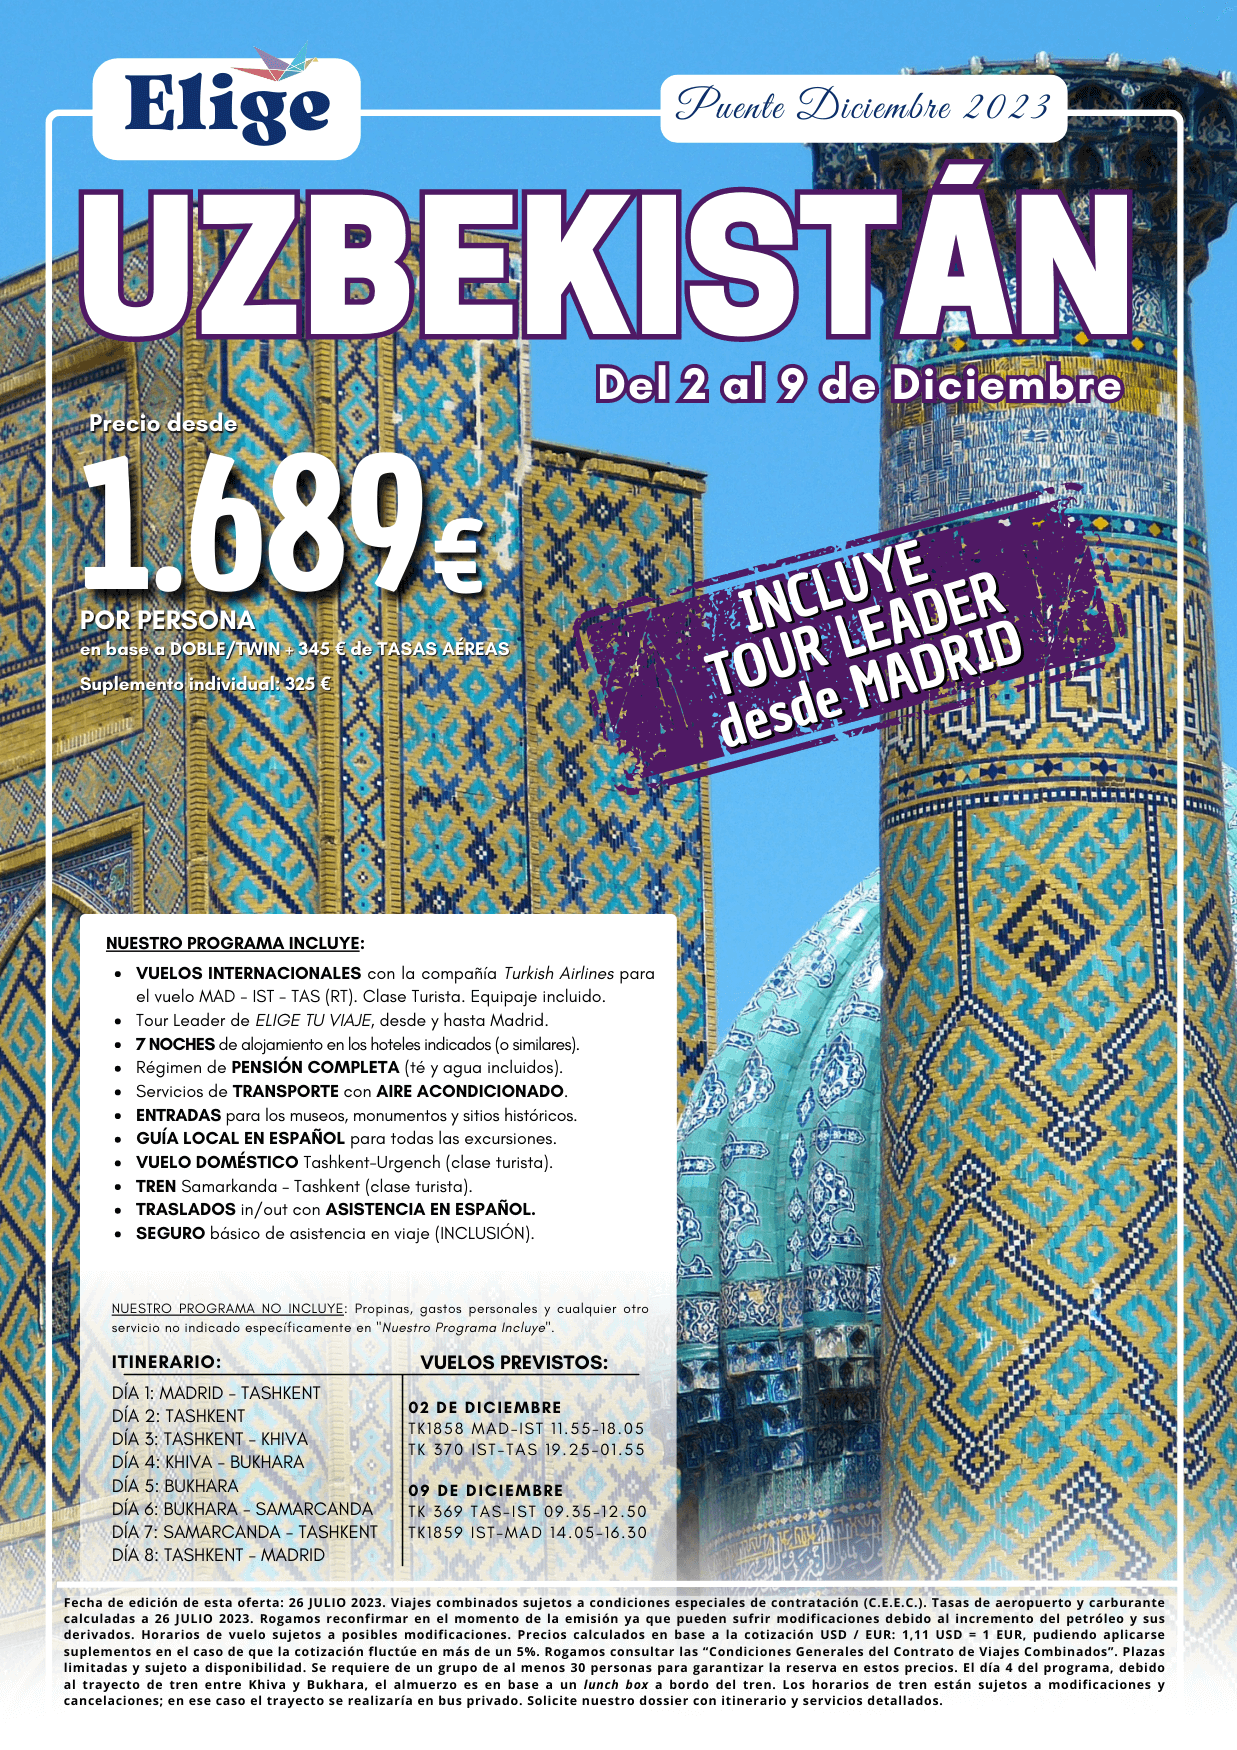 Oferta Elige tu viaje Puente de Diciembre en Uzbekistan 8 dias salida 2 de diciembre desde Madrid vuelos Turkish Airlines